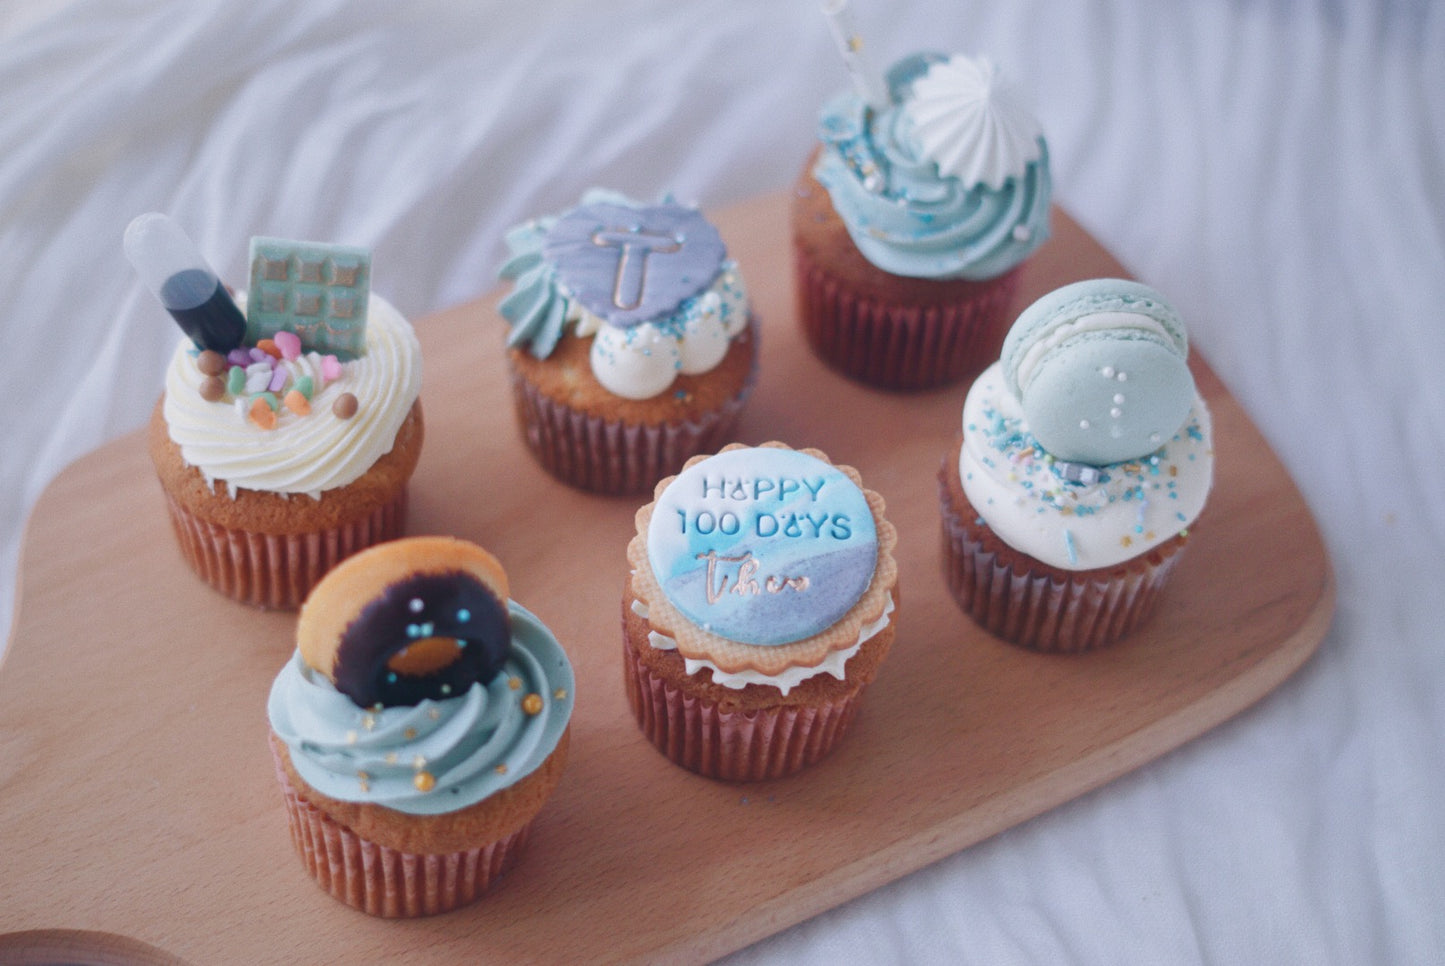 Cupcakes Set